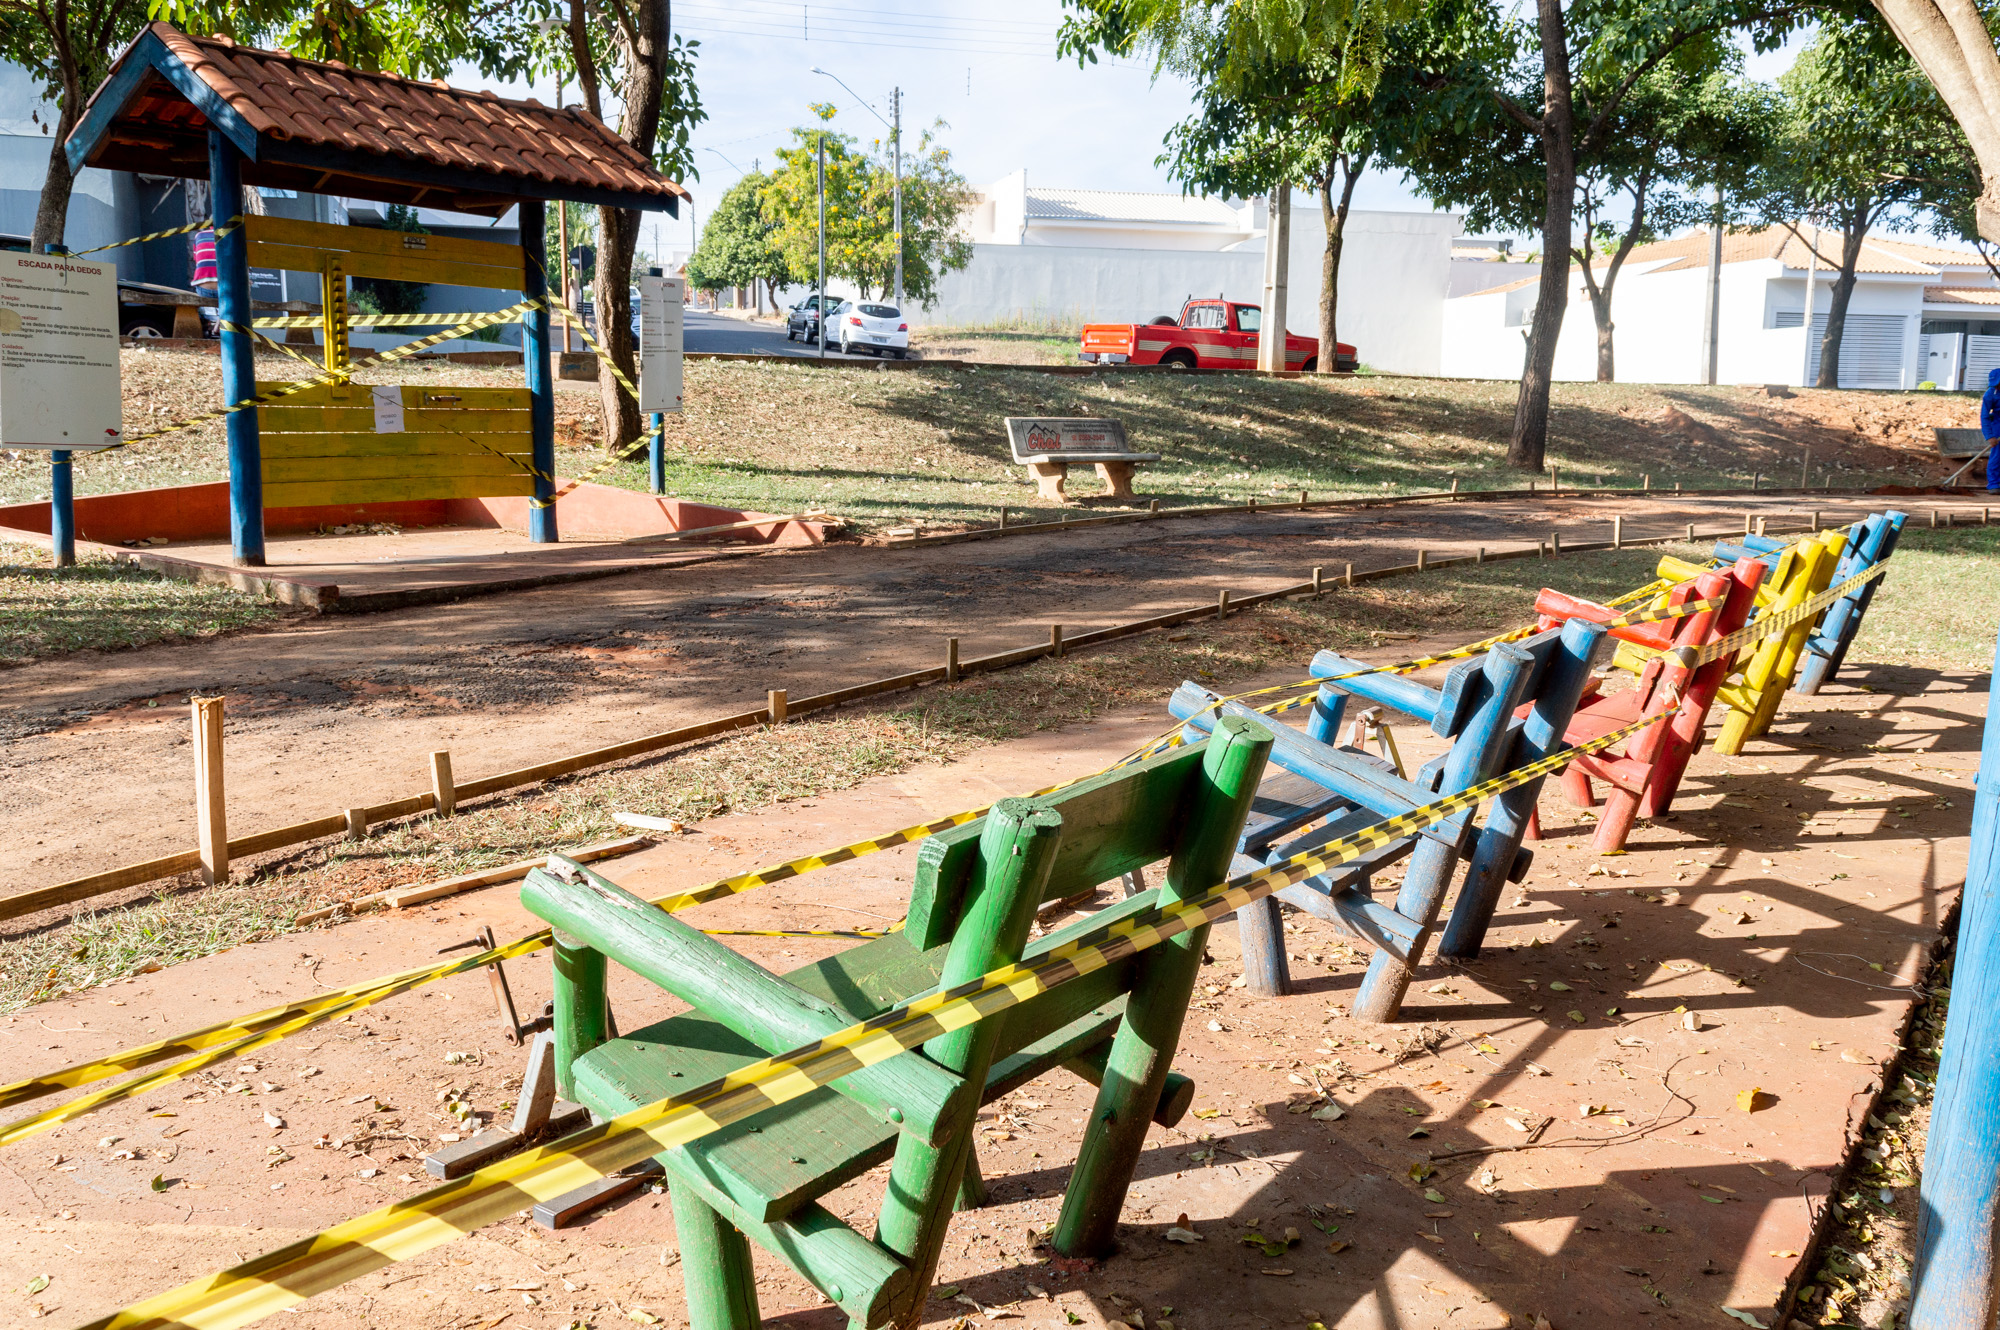 Equipamentos e bancos do Parque Municipal Mário Covas (Parque dos Lagos) lacrados Foto: Carina Costa